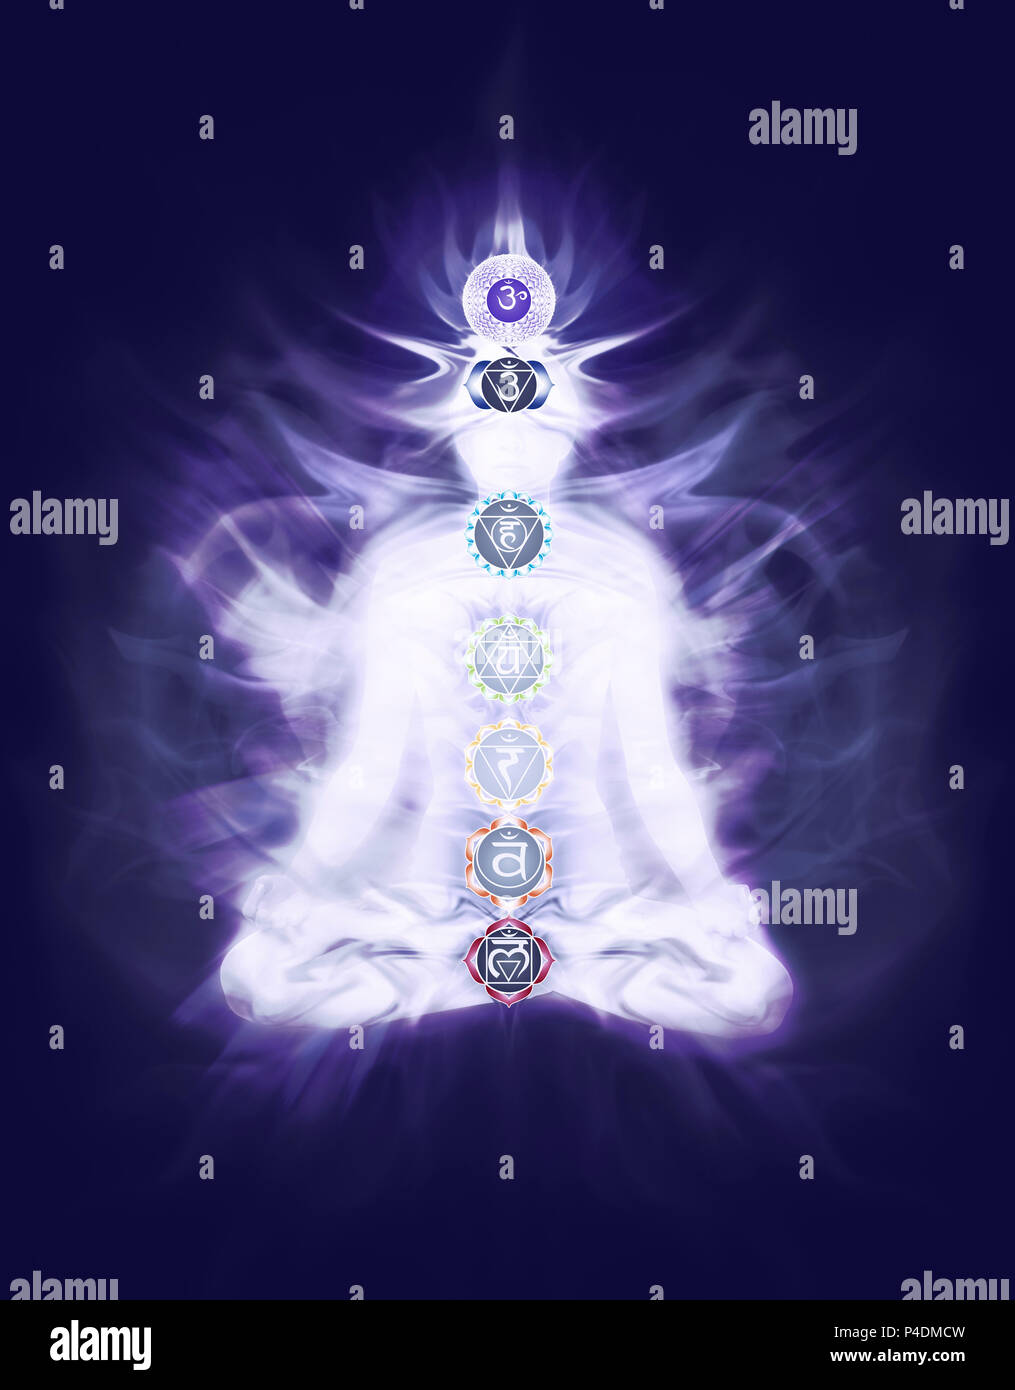 Femme assise en lotus Yoga méditation Chakra couleur posent avec symboles et émanant de l'énergie Qi superposé sur le corps sur la couleur pourpre bleu marine foncé b Banque D'Images